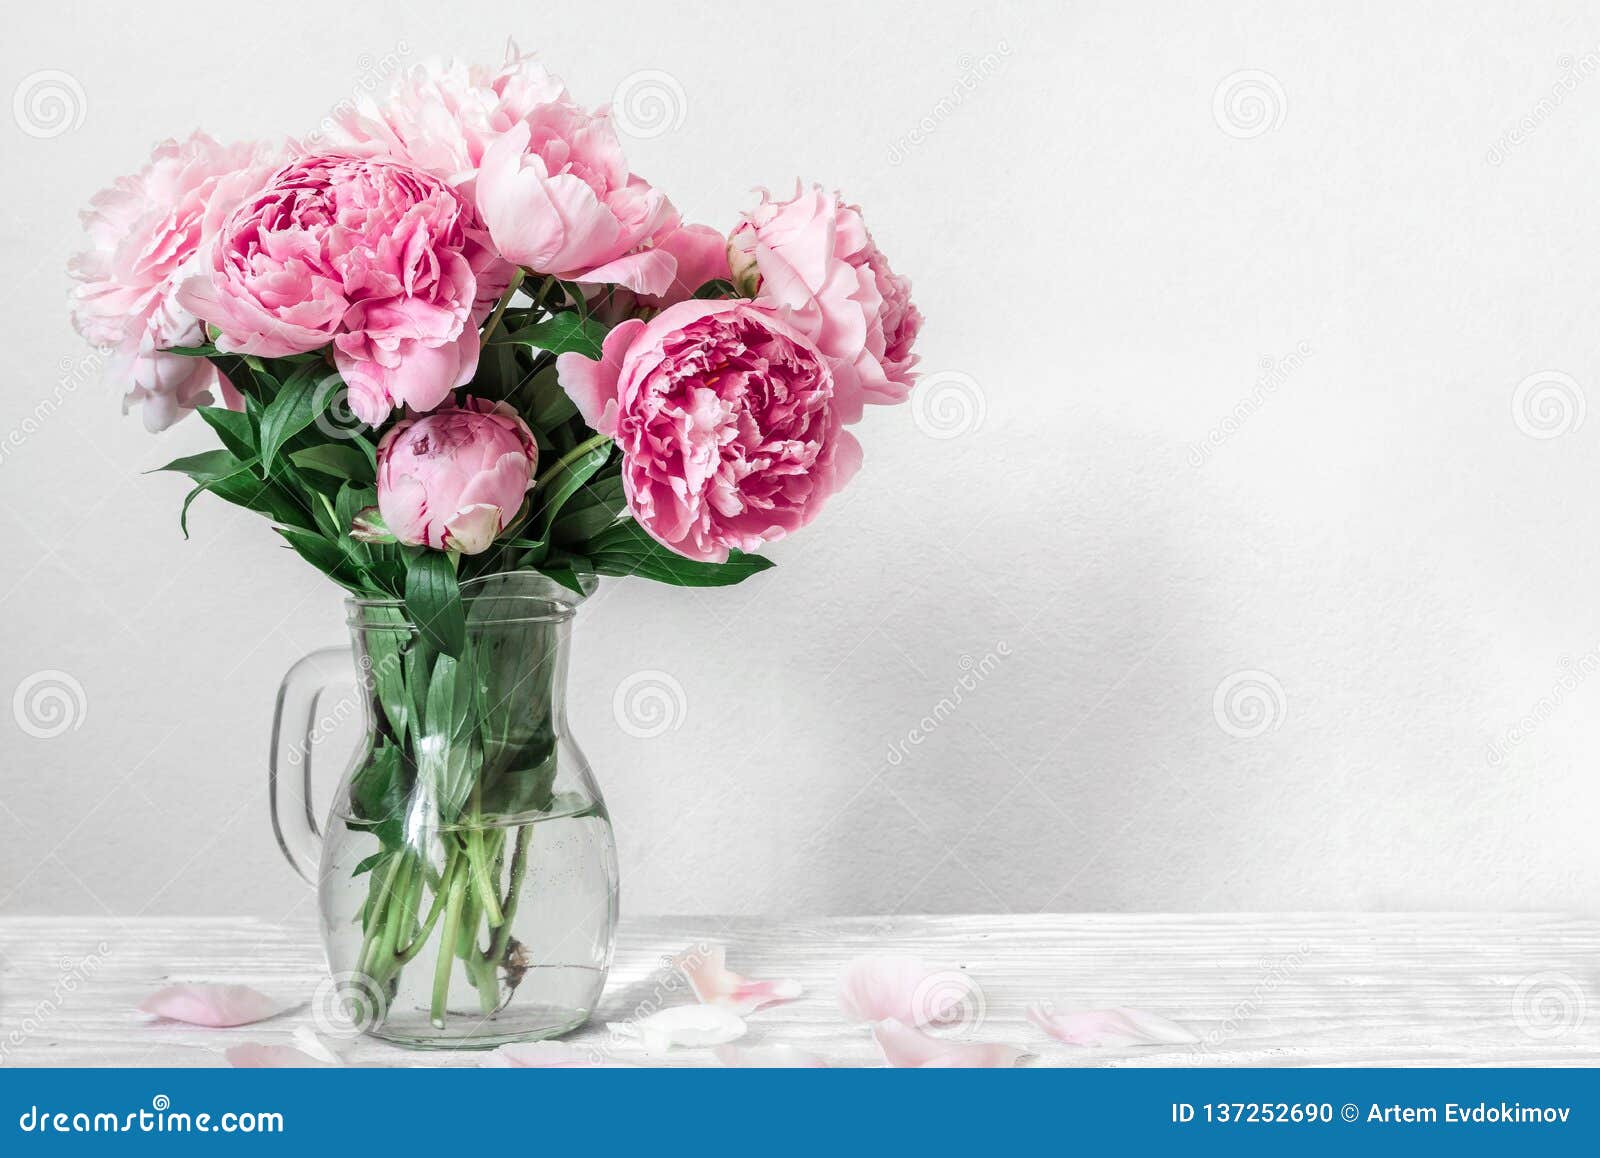 桃红色牡丹花美丽的花束在花瓶的妇女天或婚姻的背景与拷贝空间库存照片 图片包括有妇女天或婚姻的背景与拷贝空间 桃红色牡丹花美丽的花束在花瓶的